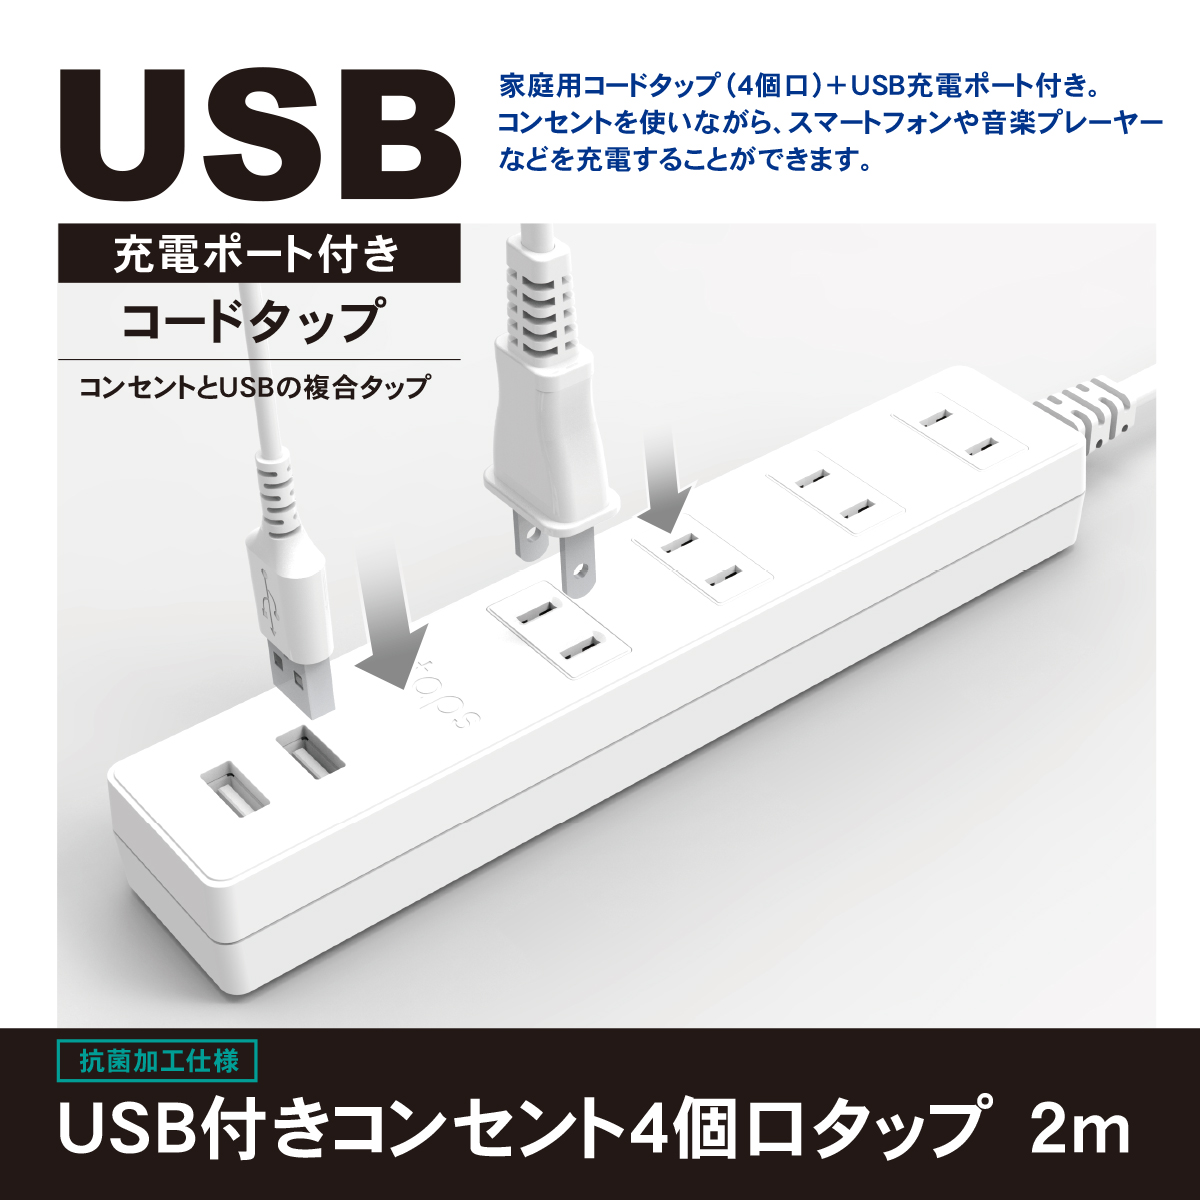 製品情報 | USB付きコンセント4個口タップ 2m | STPA420-WT | 株式会社 